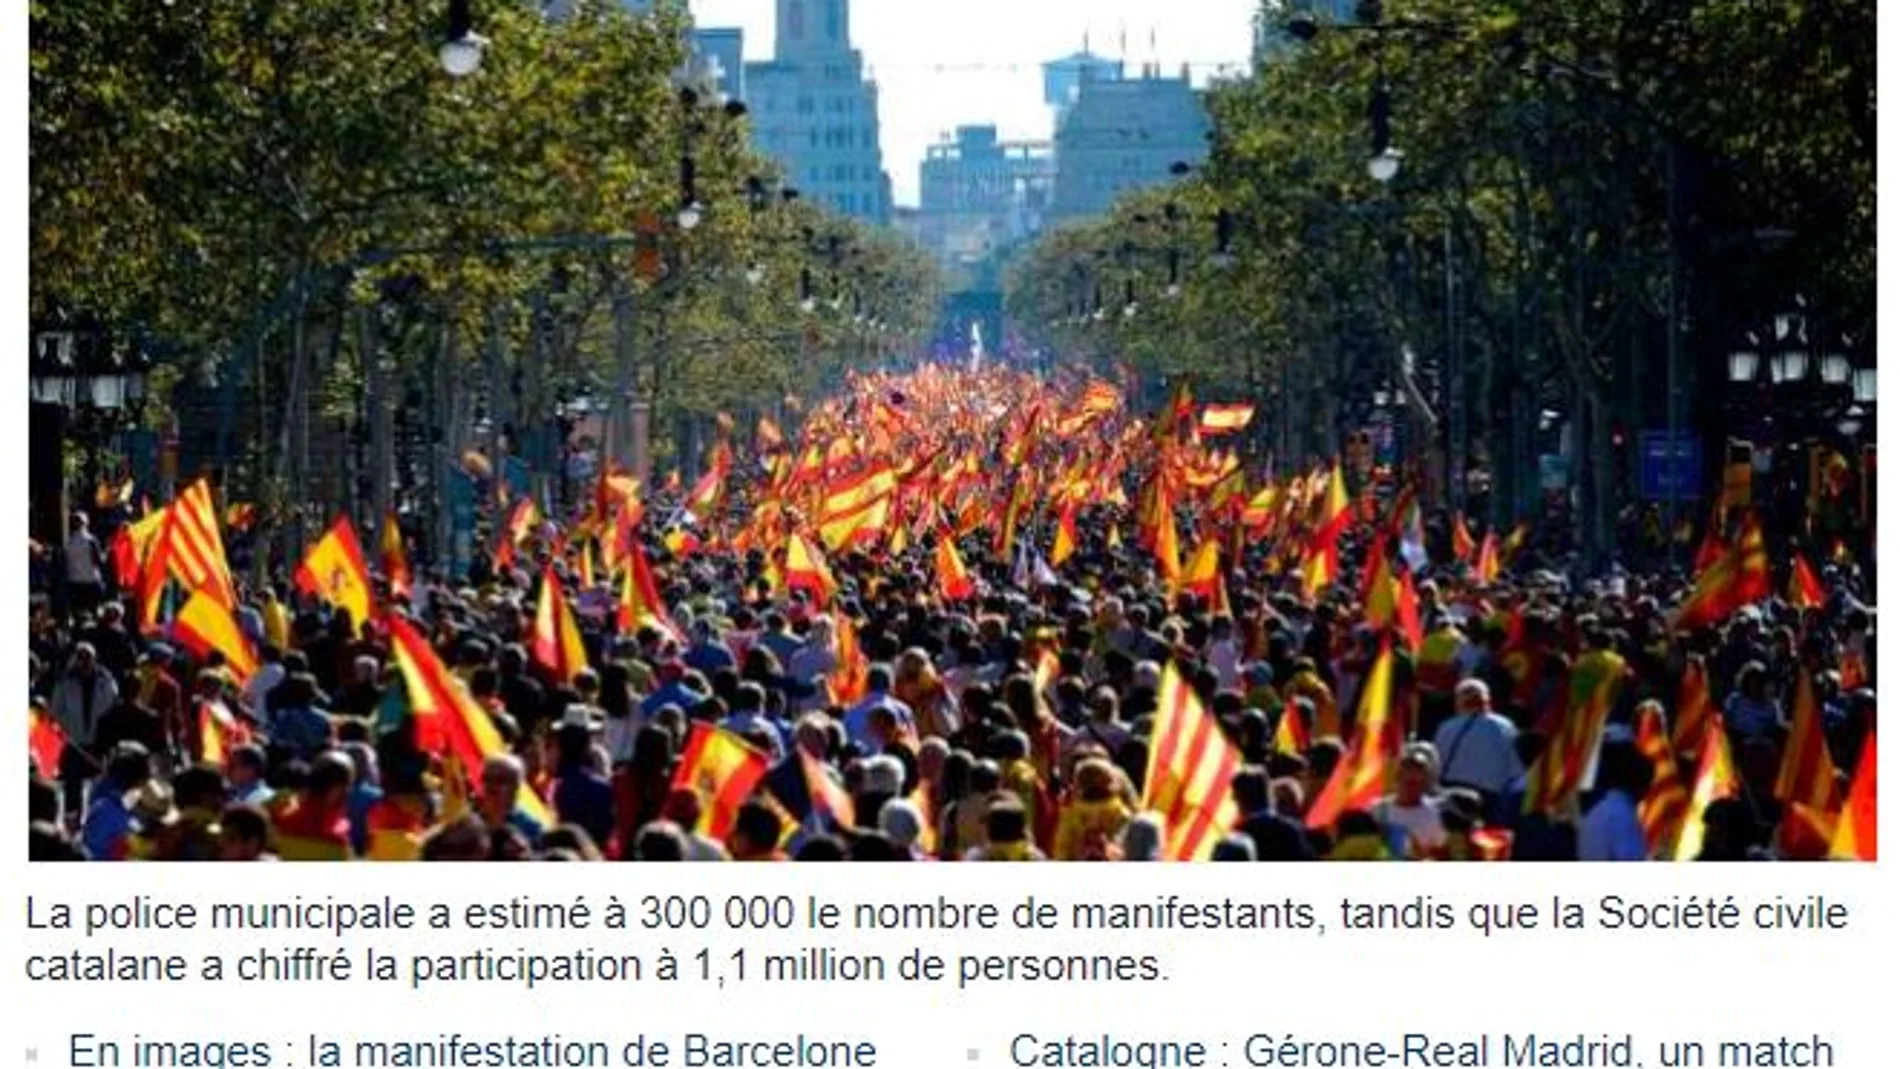 La prensa internacional se hace eco de la masiva manifestación por la unidad de España en Barcelona